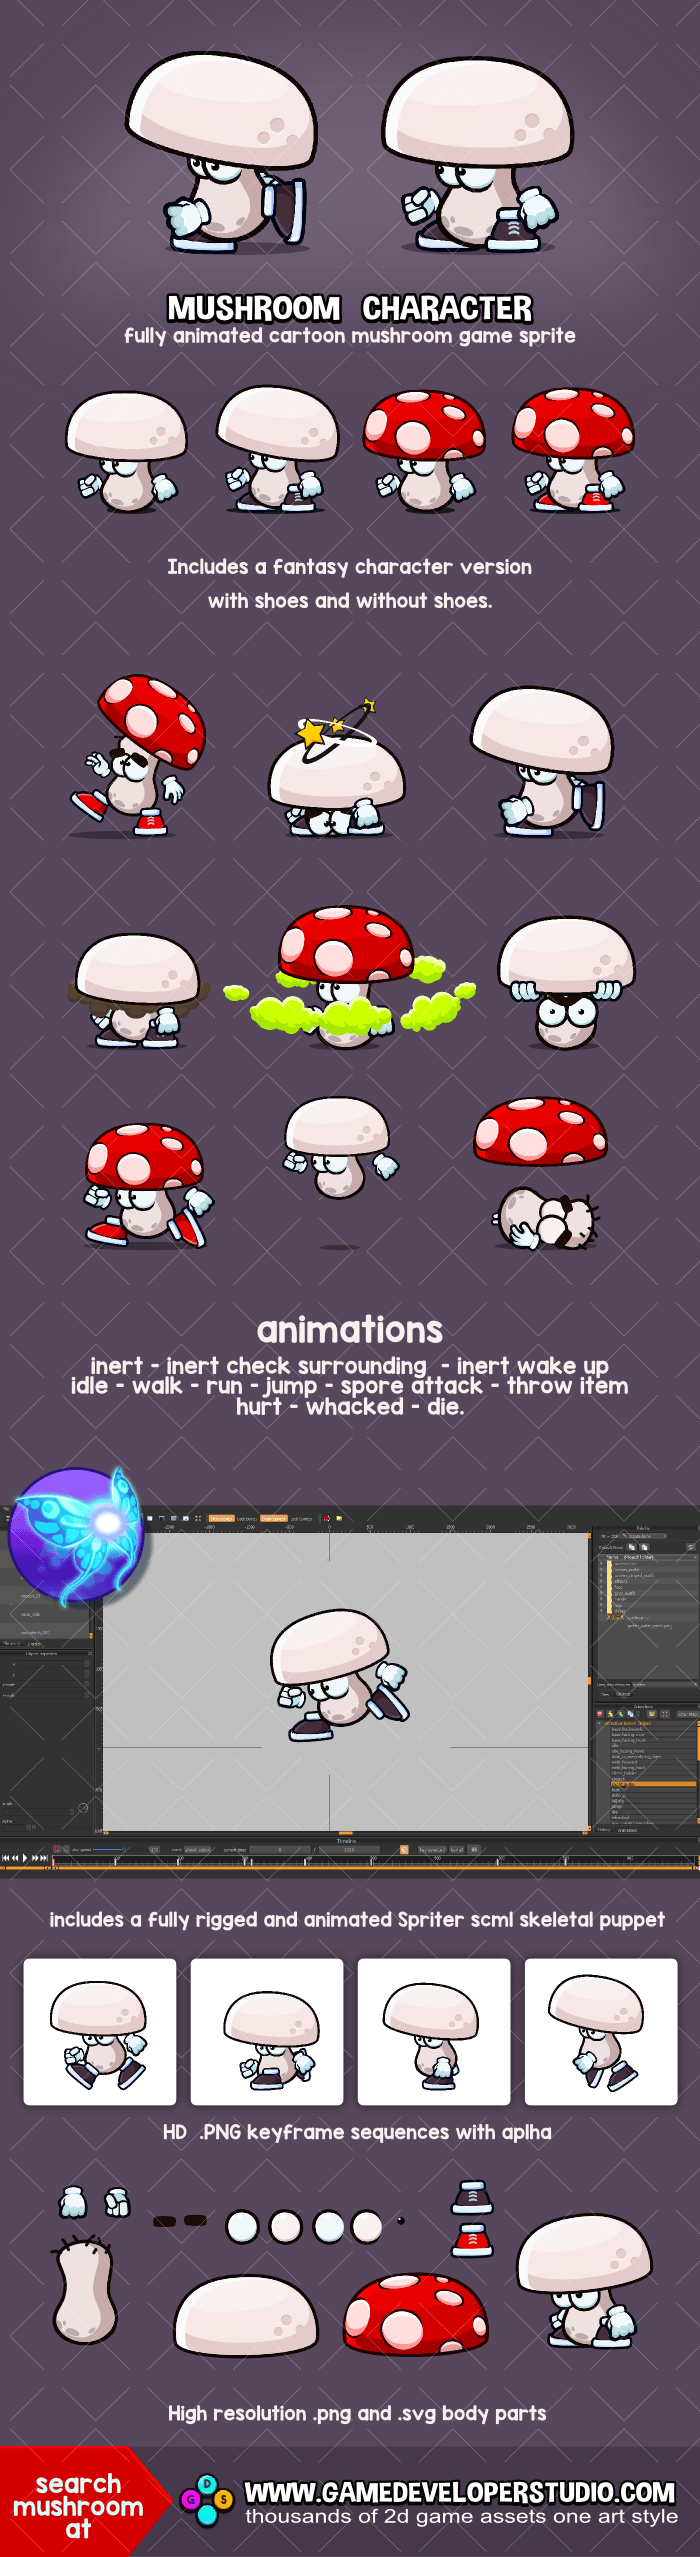 Animated mushroom character